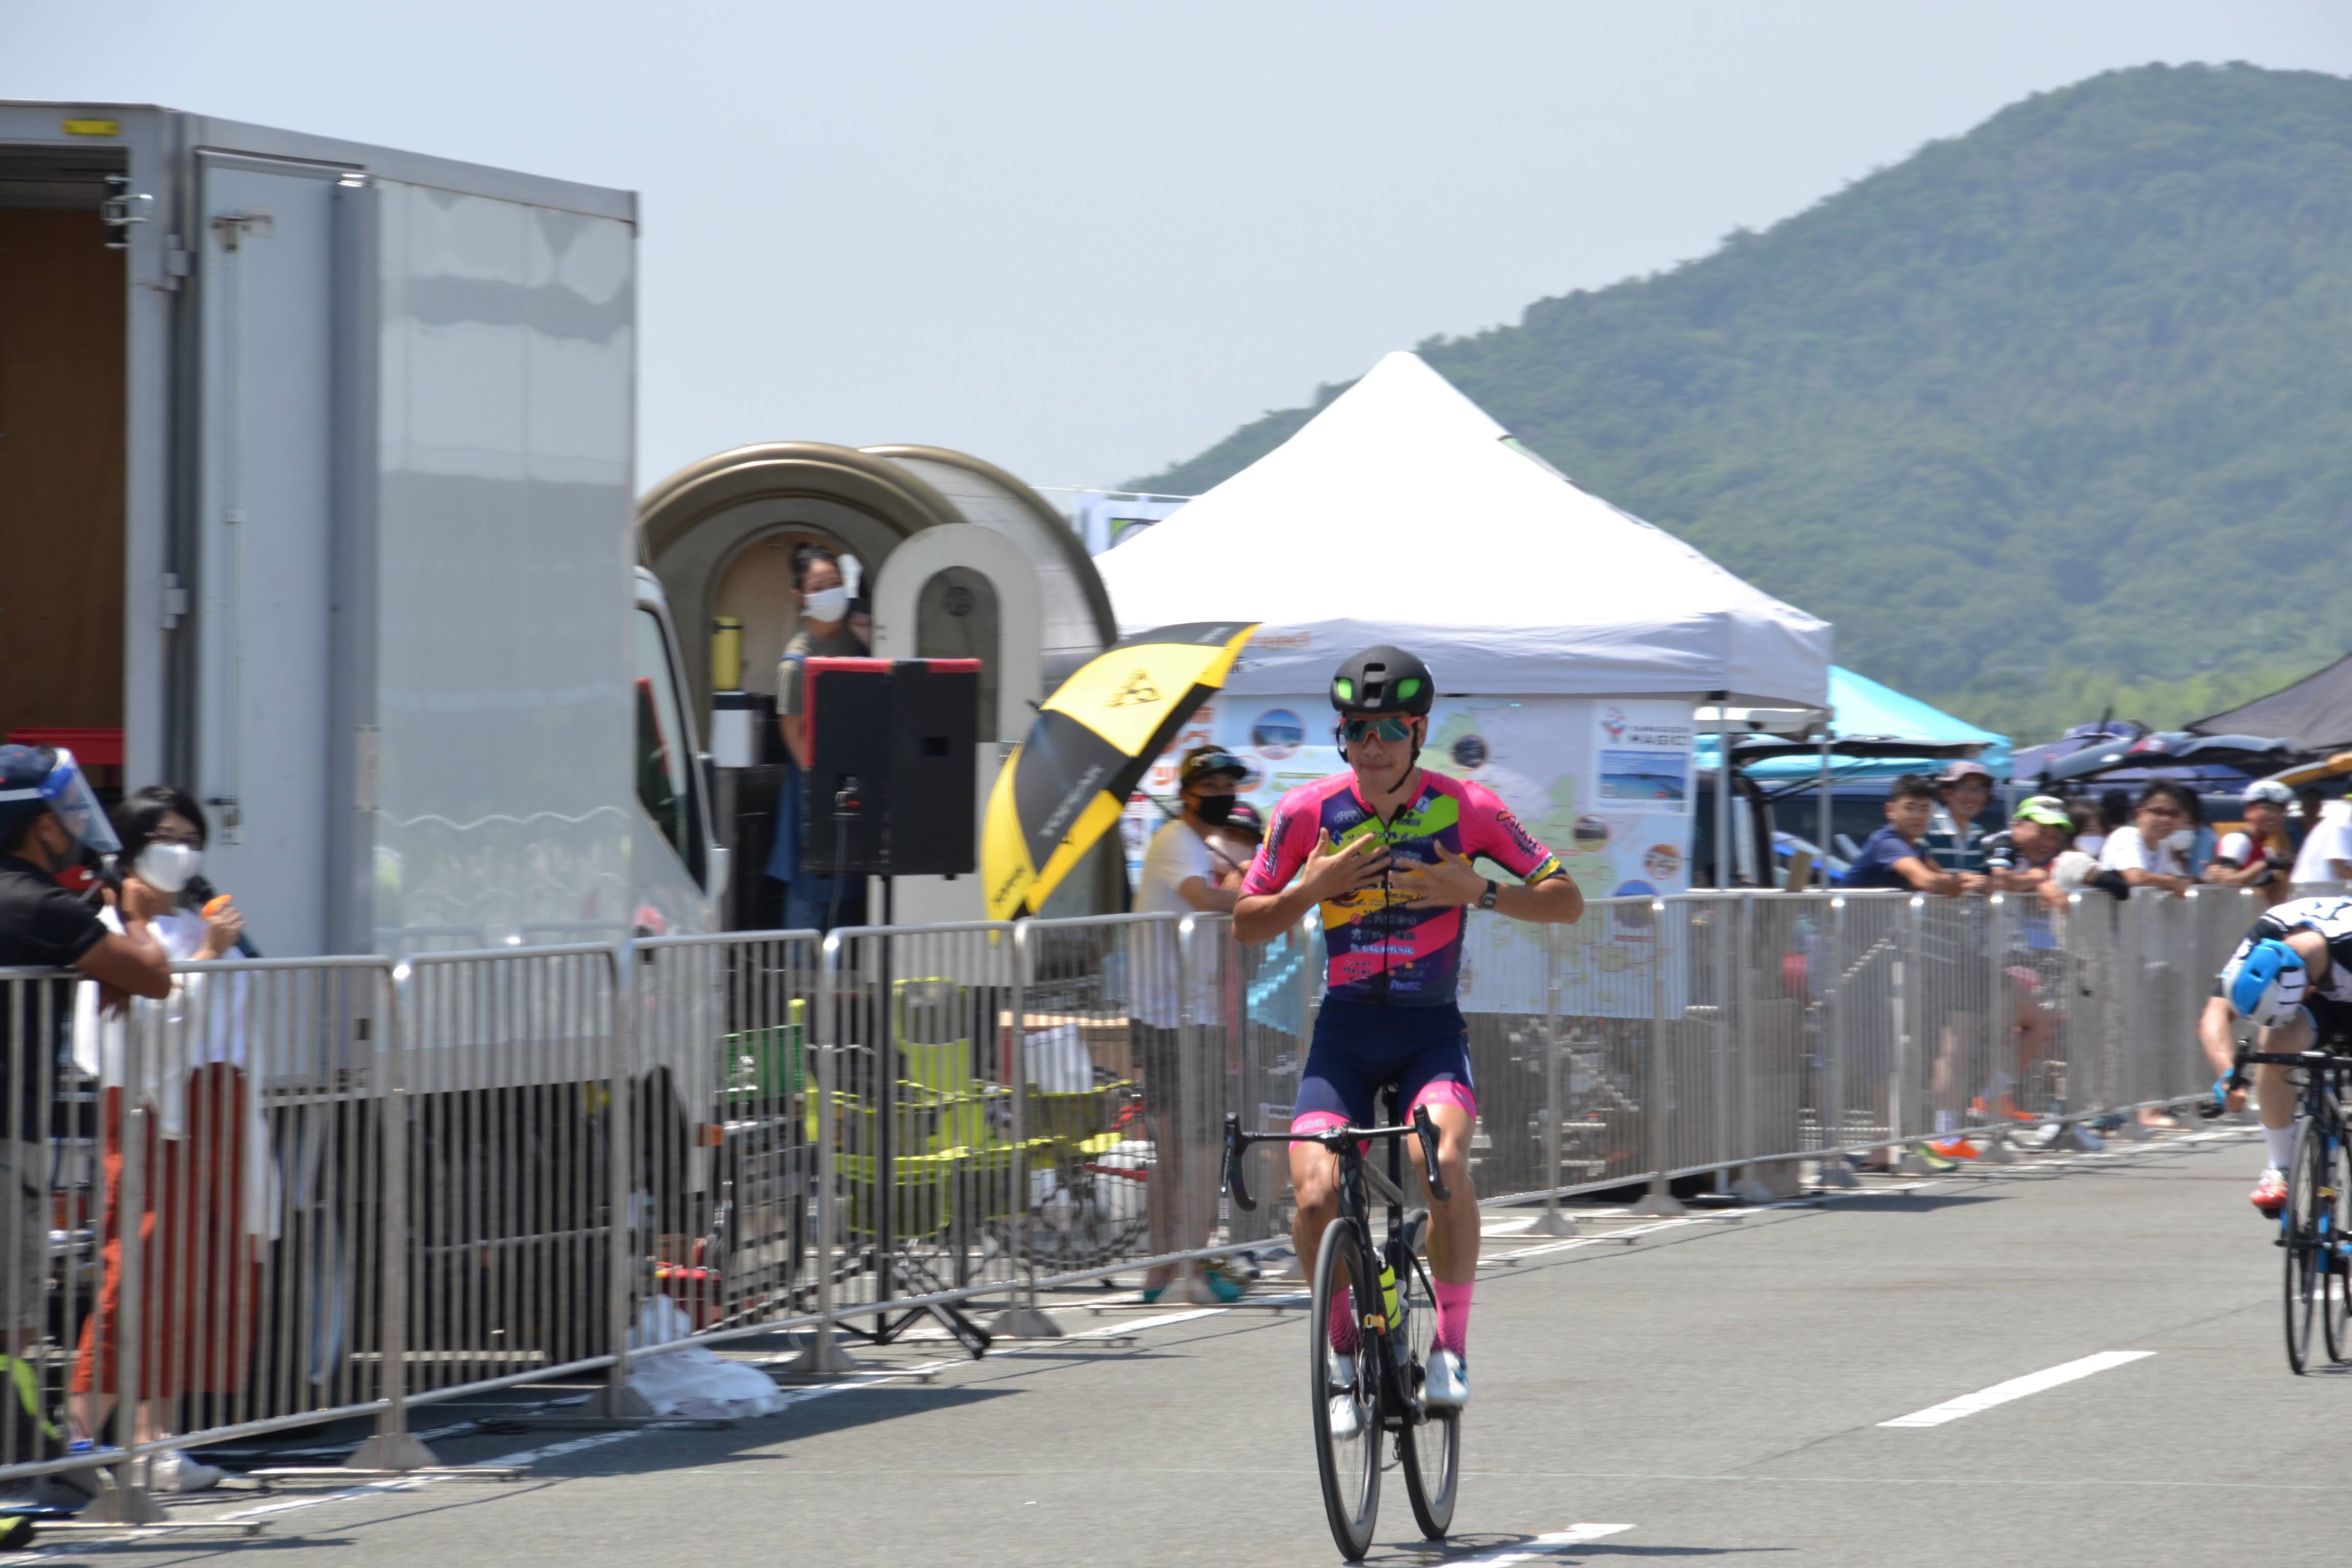 山口県自転車競技連盟 主催イベント きらら浜サイクルミーティング7月大会 7 18 19開催